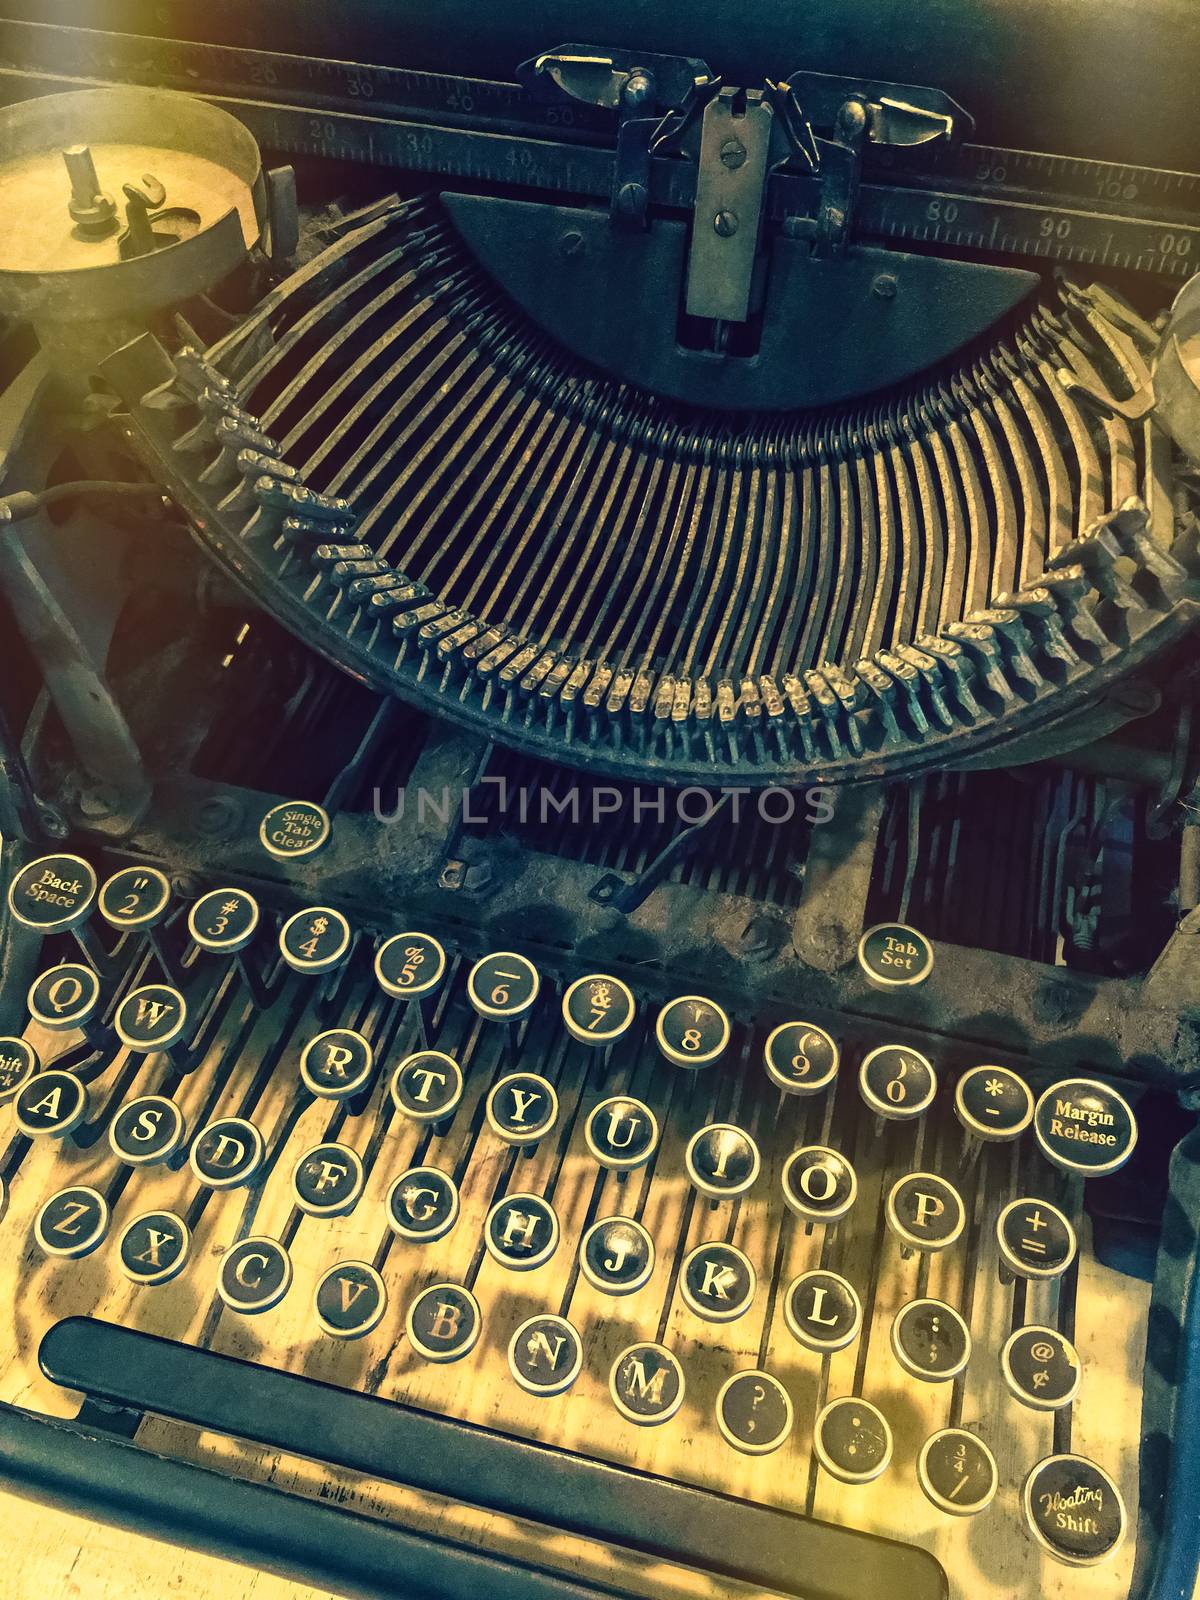 Keys of a vintage typewriter by anikasalsera